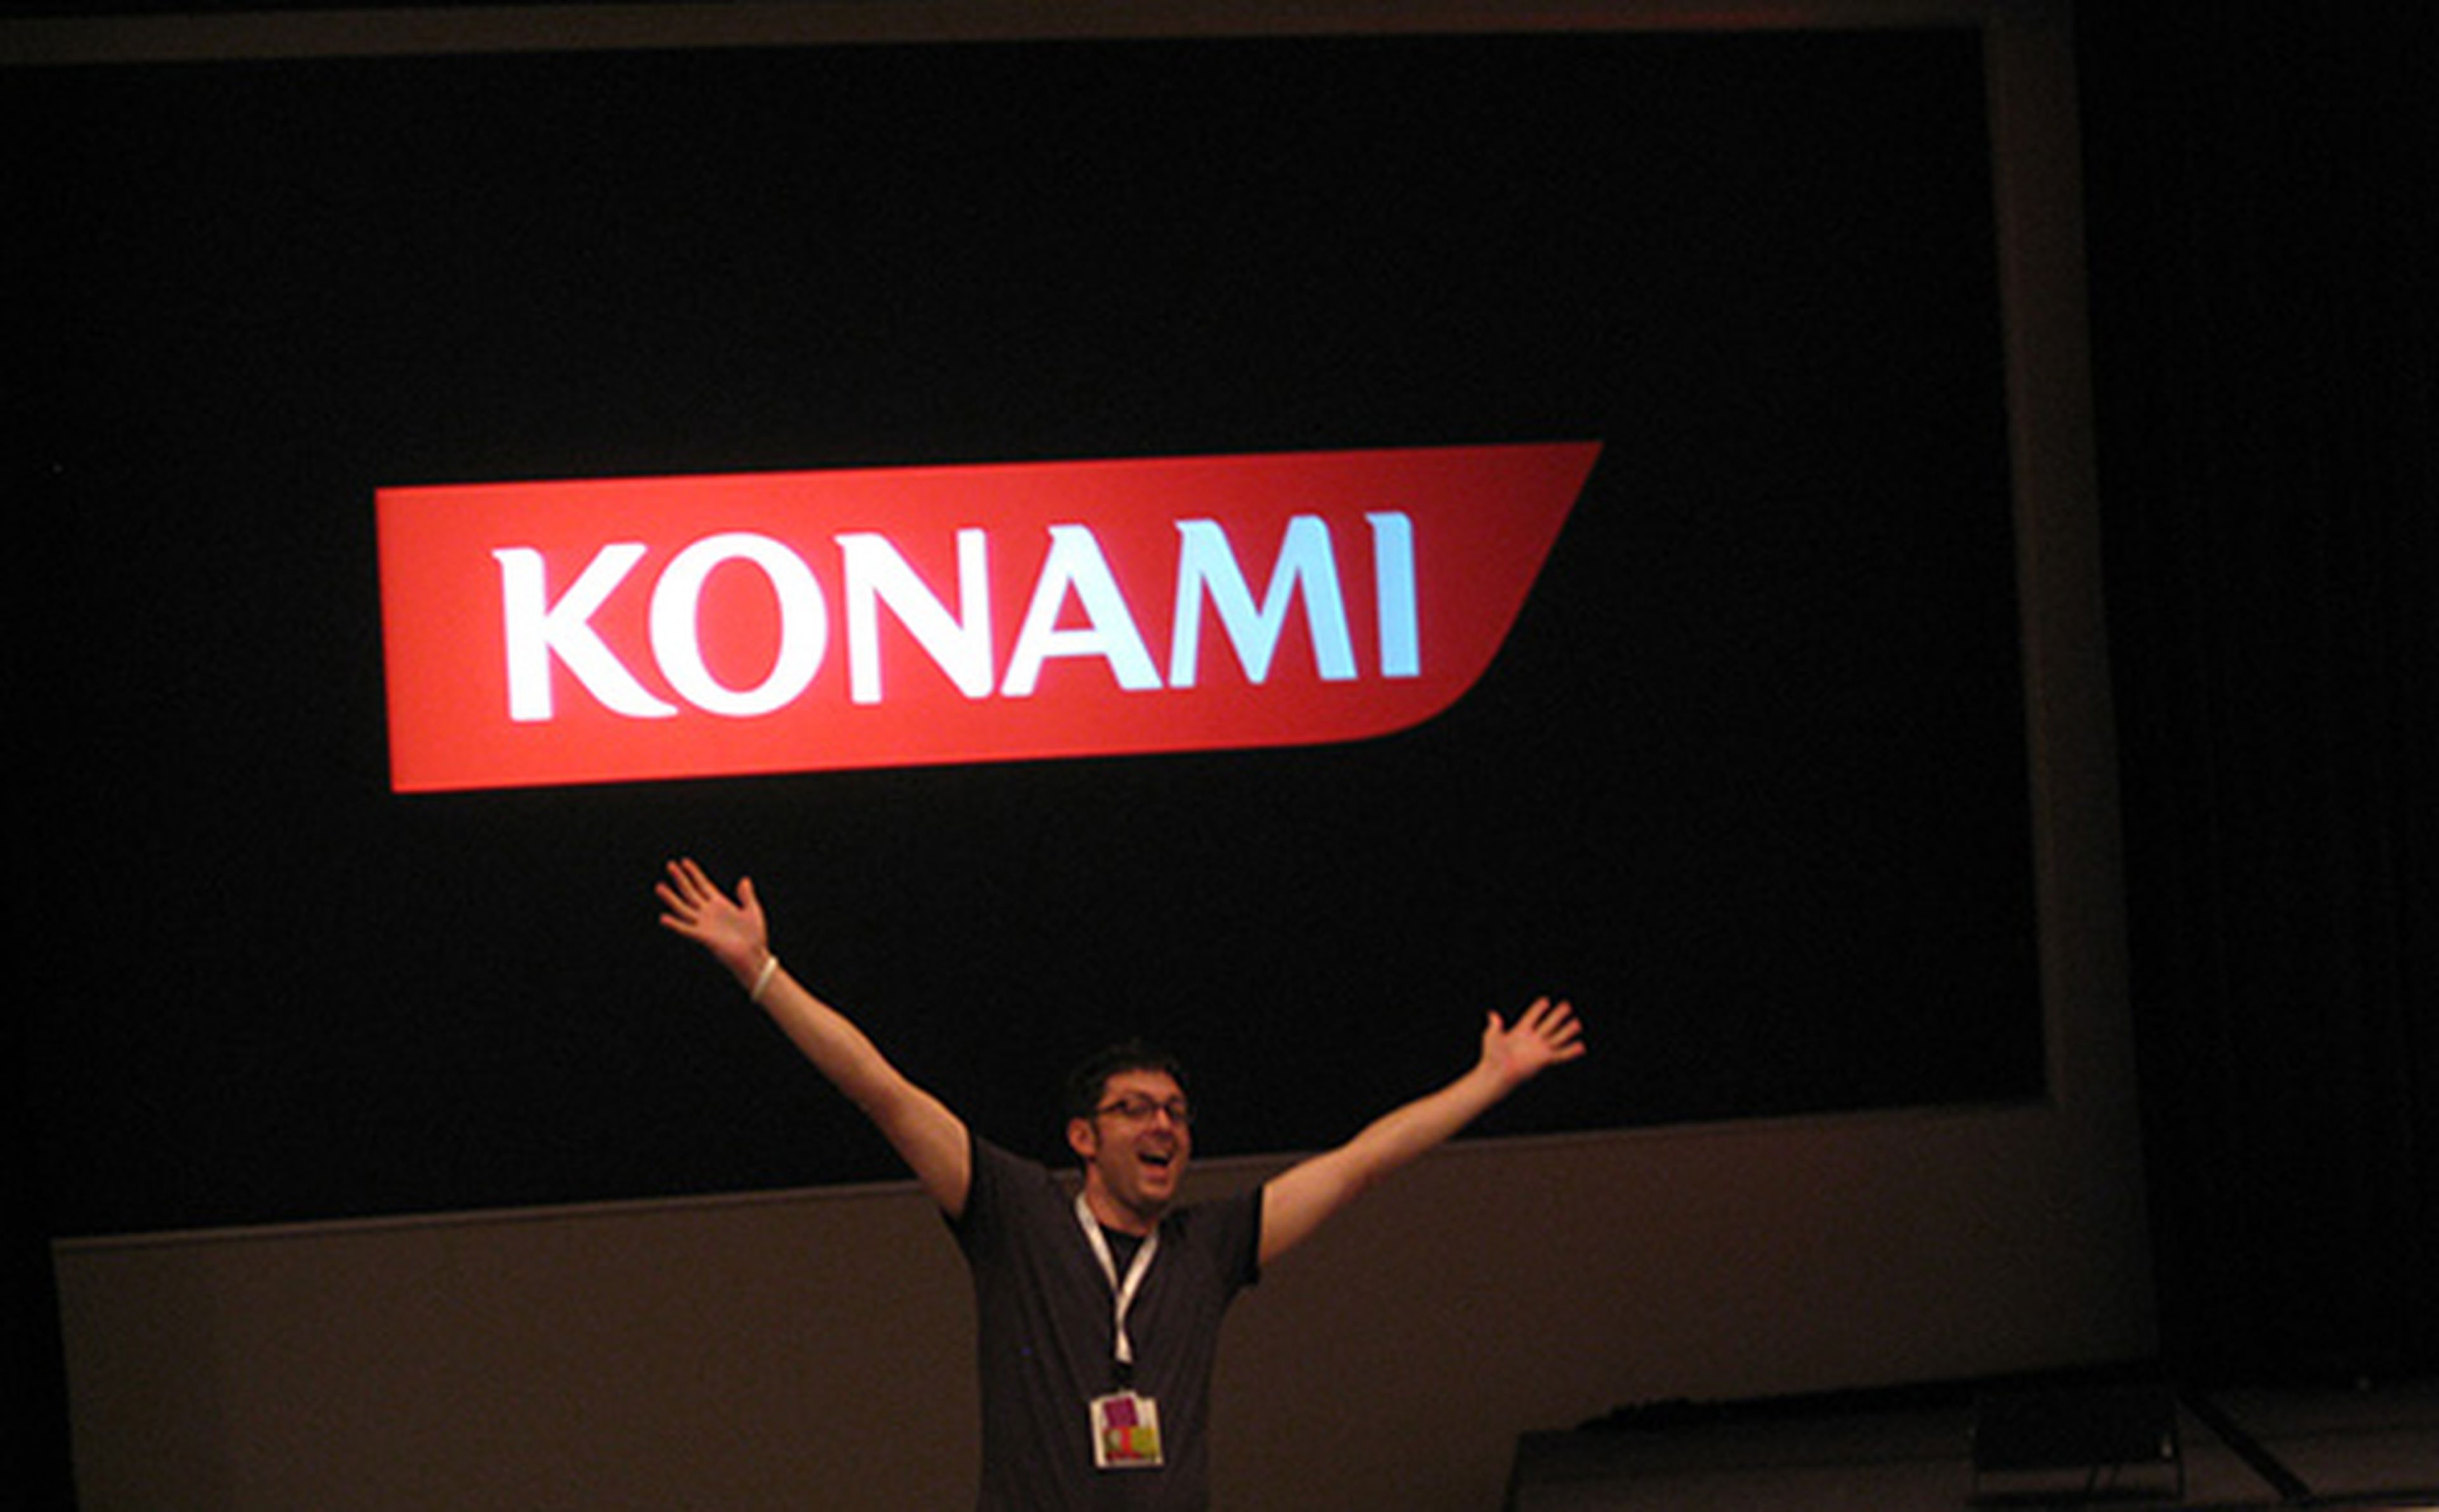 Conferencia de Konami Japón mañana